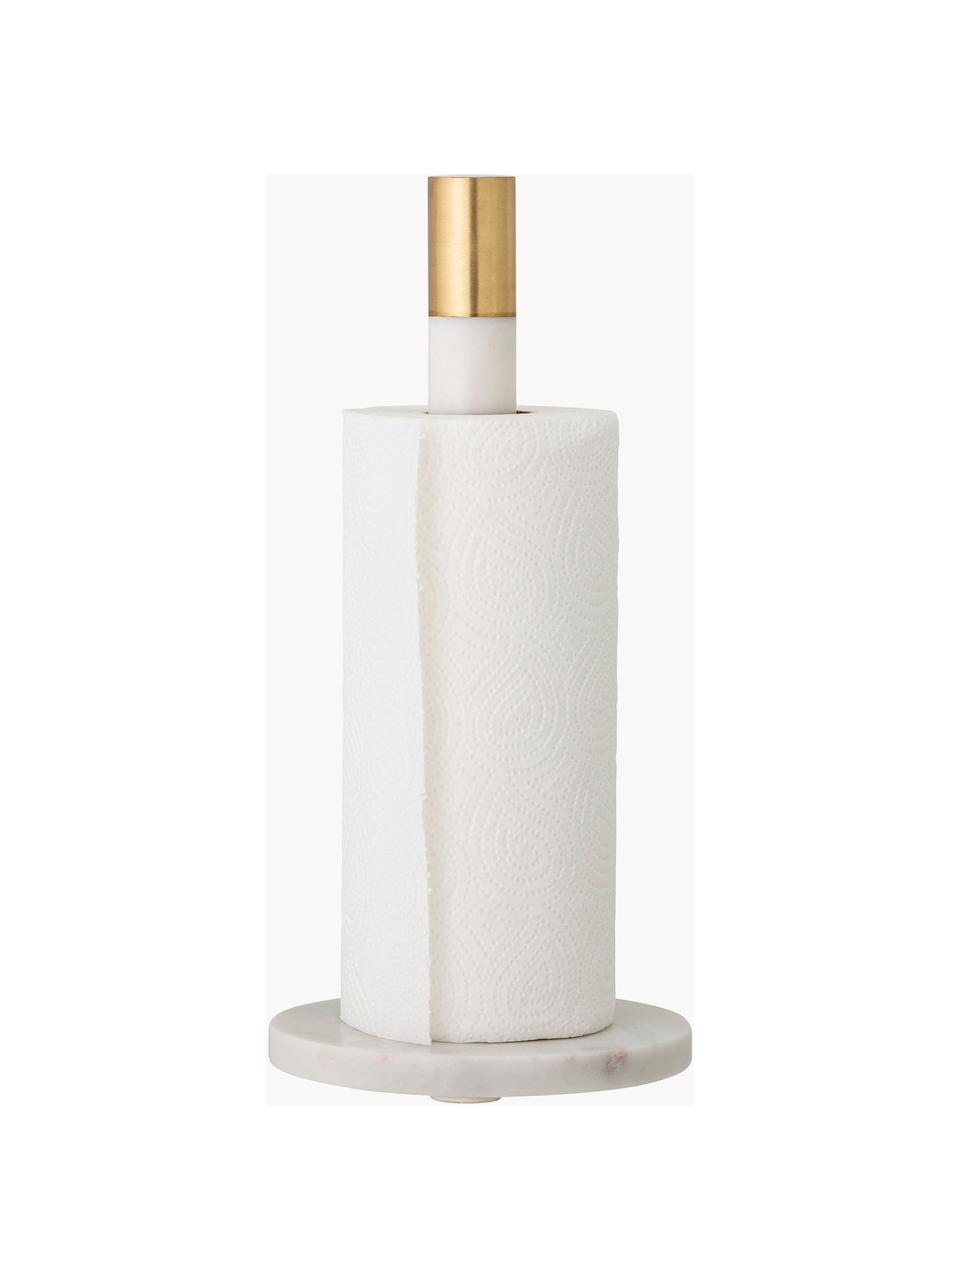 Marmeren keukenrolhouder Emira, Decoratie: messing, Wit, gemarmerd, goudkleurig, Ø 15 cm